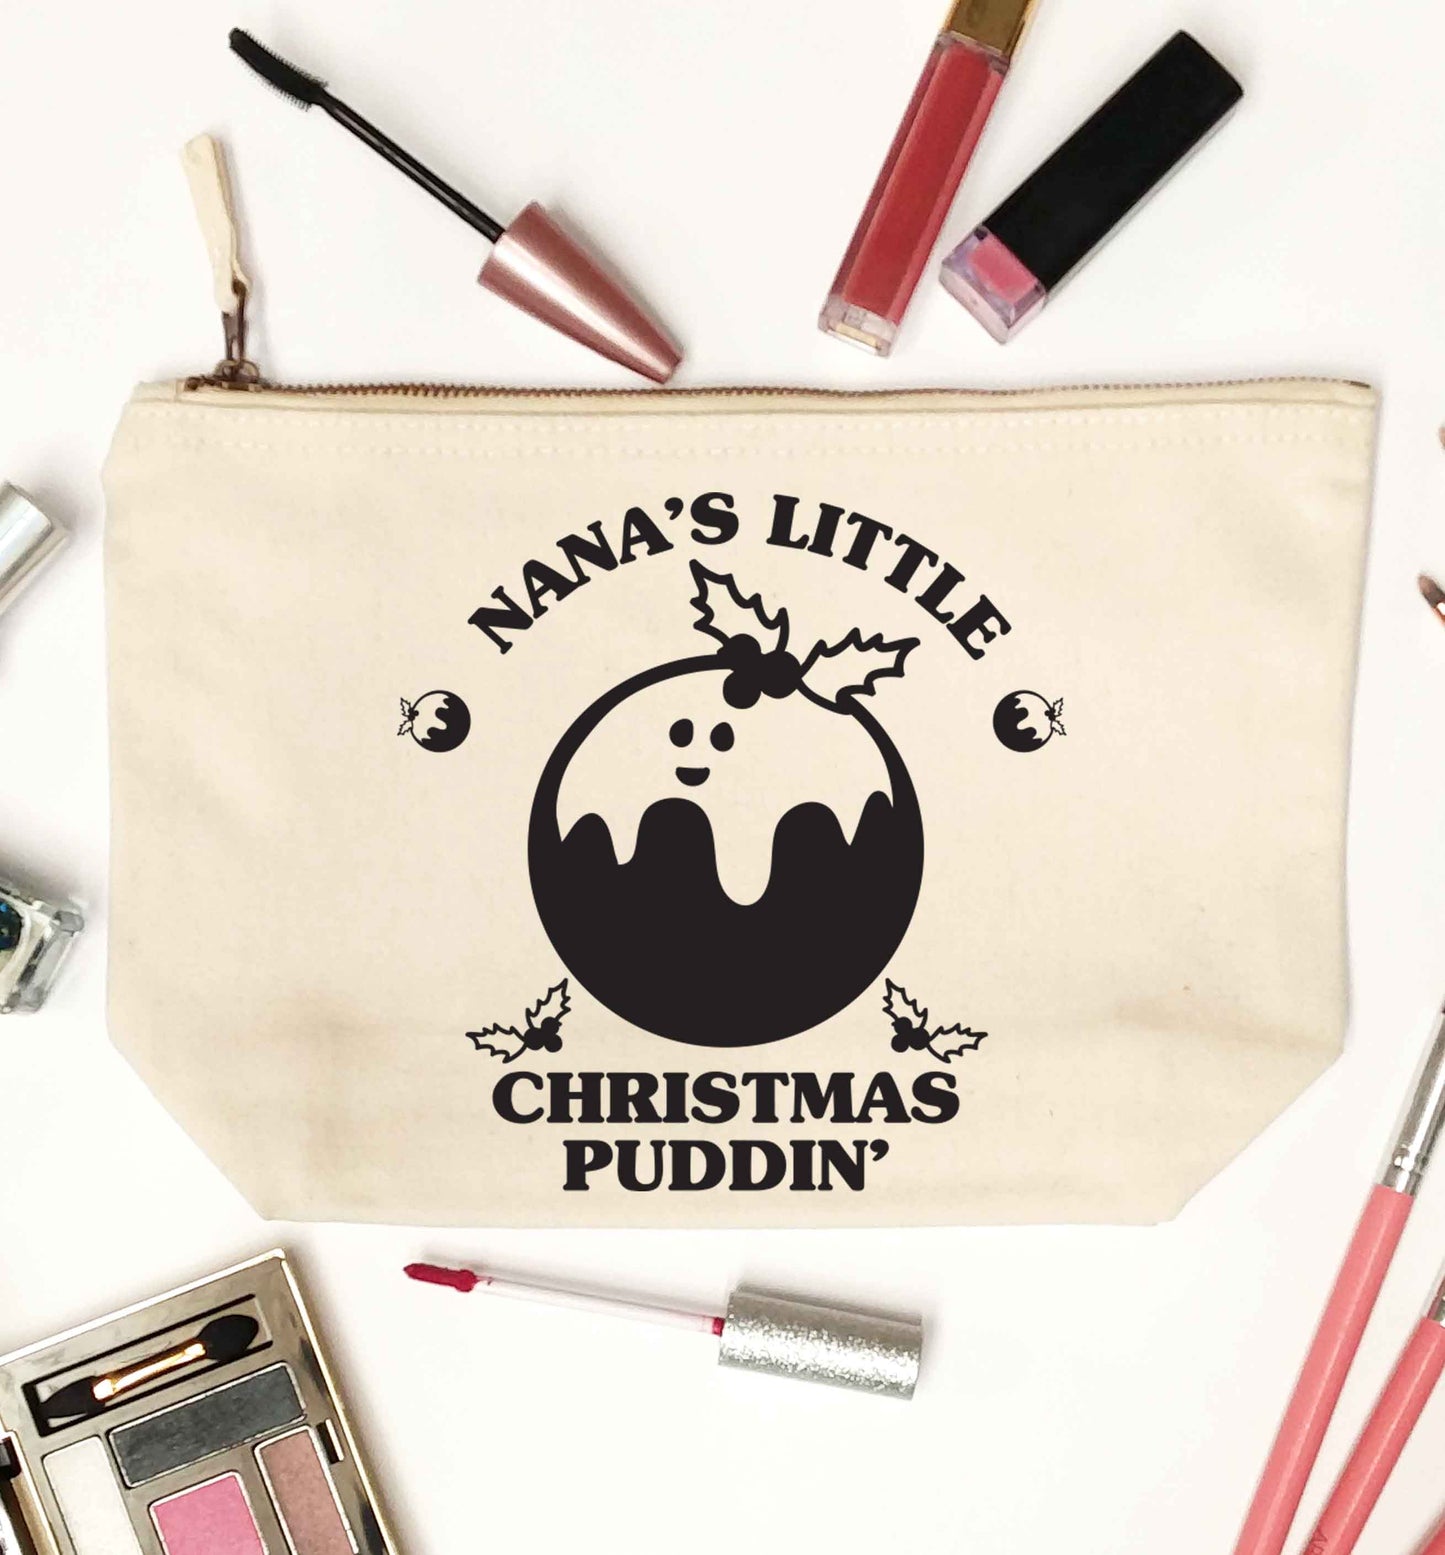 Nana's little Christmas puddin' natural makeup bag